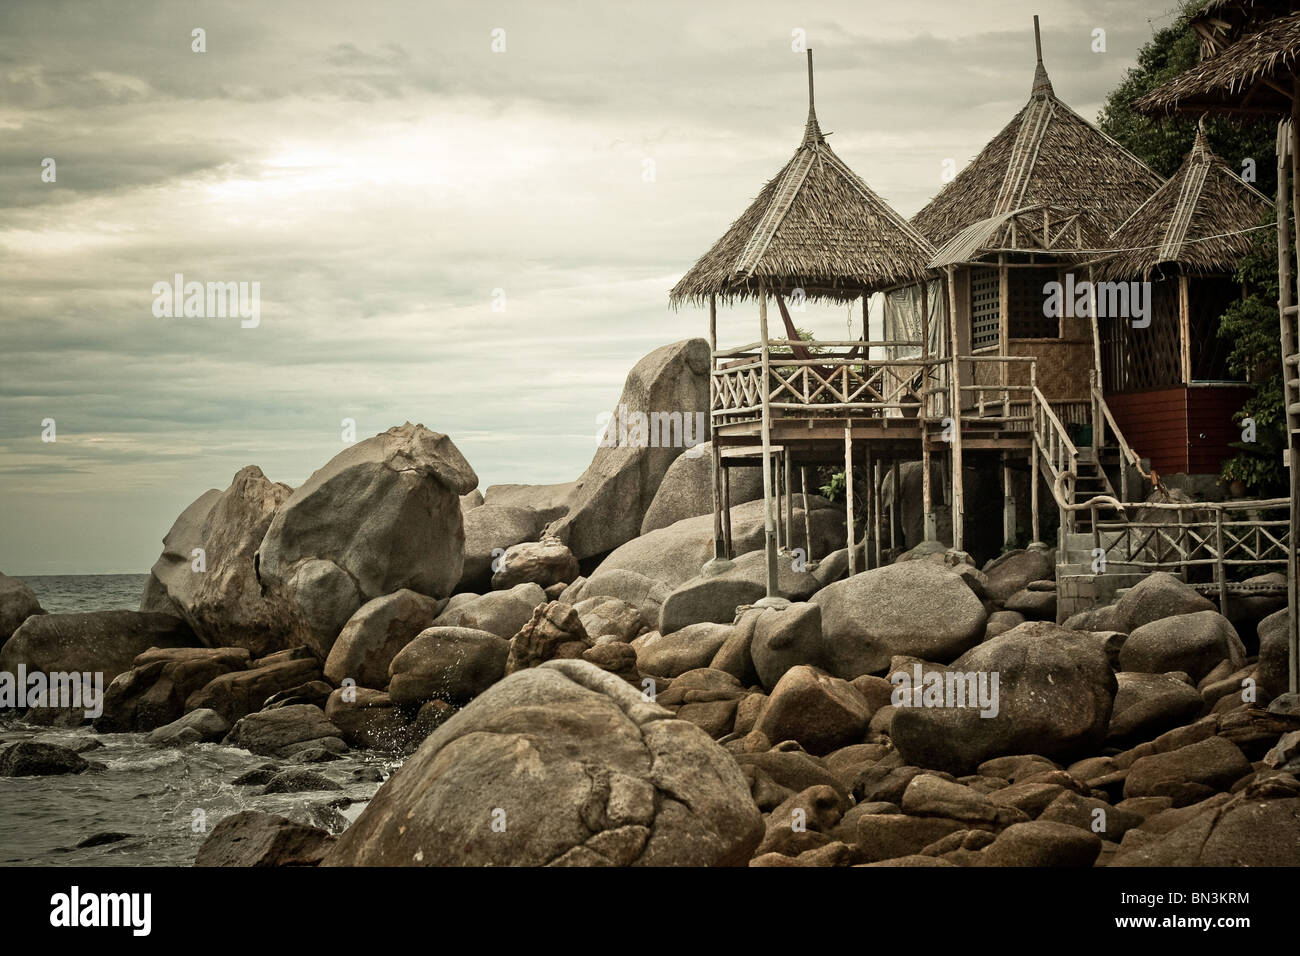 Hut at the coast of Ko Tao, Thailand Stock Photo